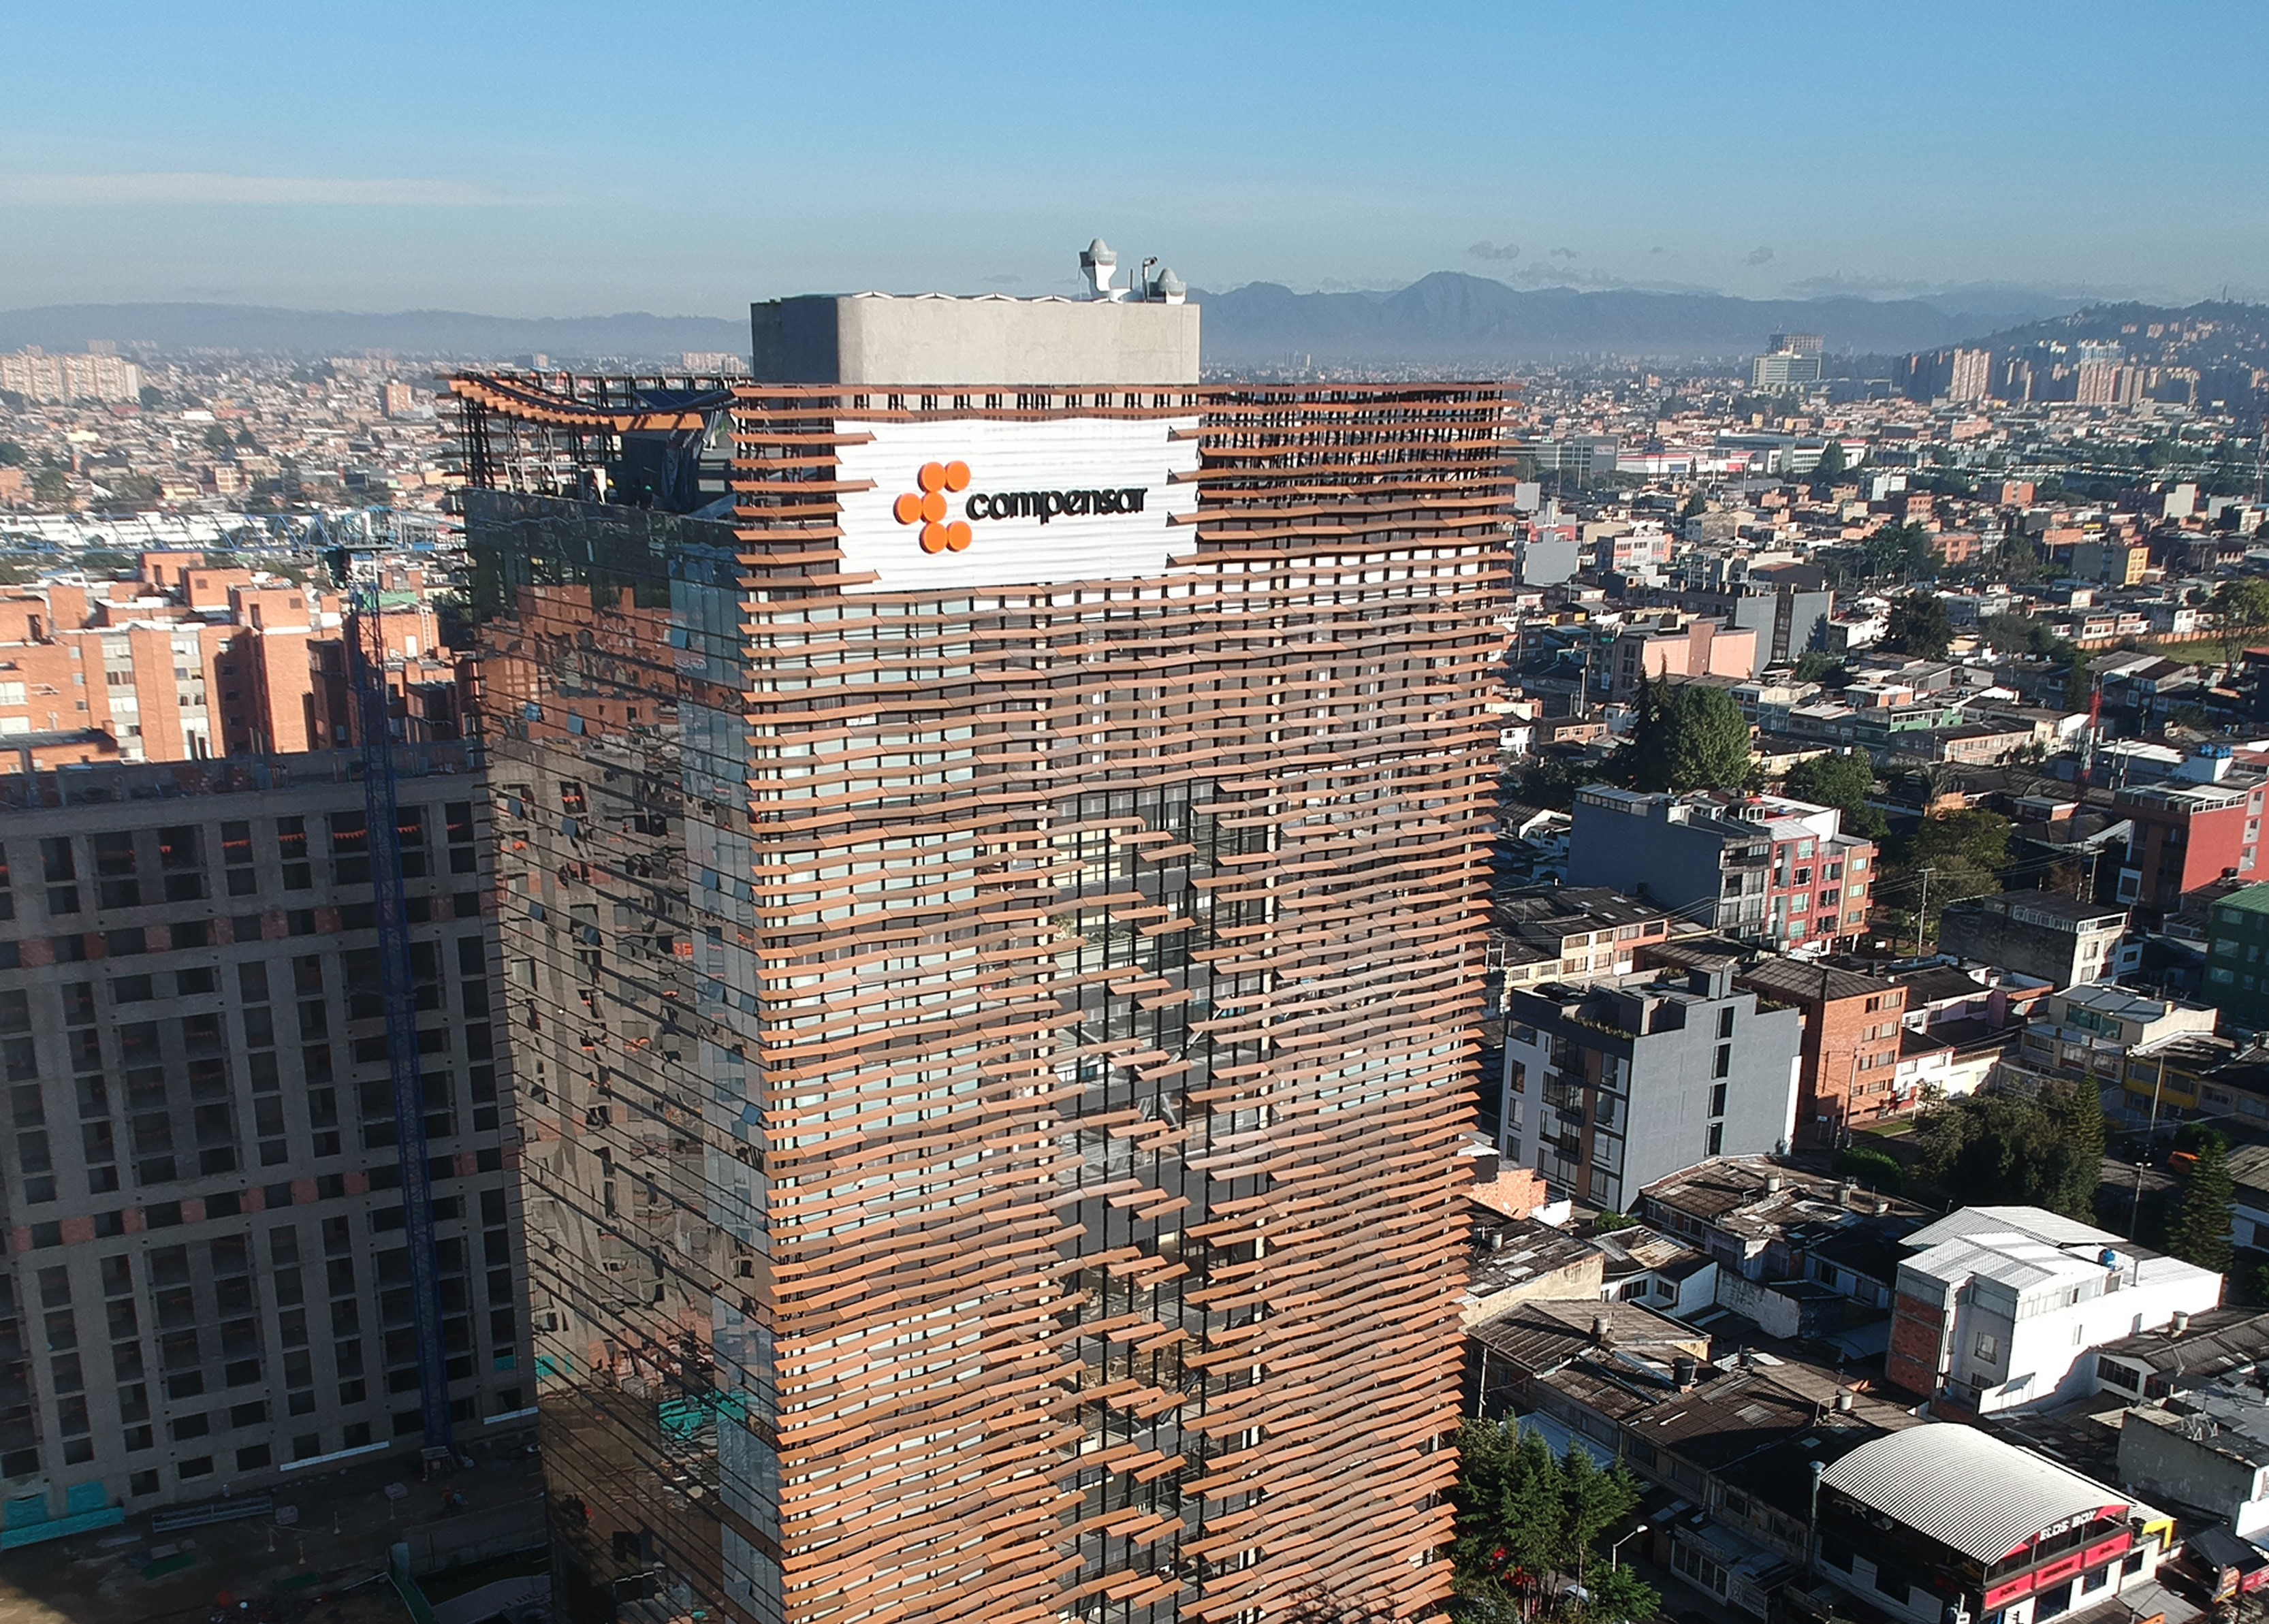 Compensar tiene nueva sede en Bogotá: hay baile, natación, cocina y servicios.